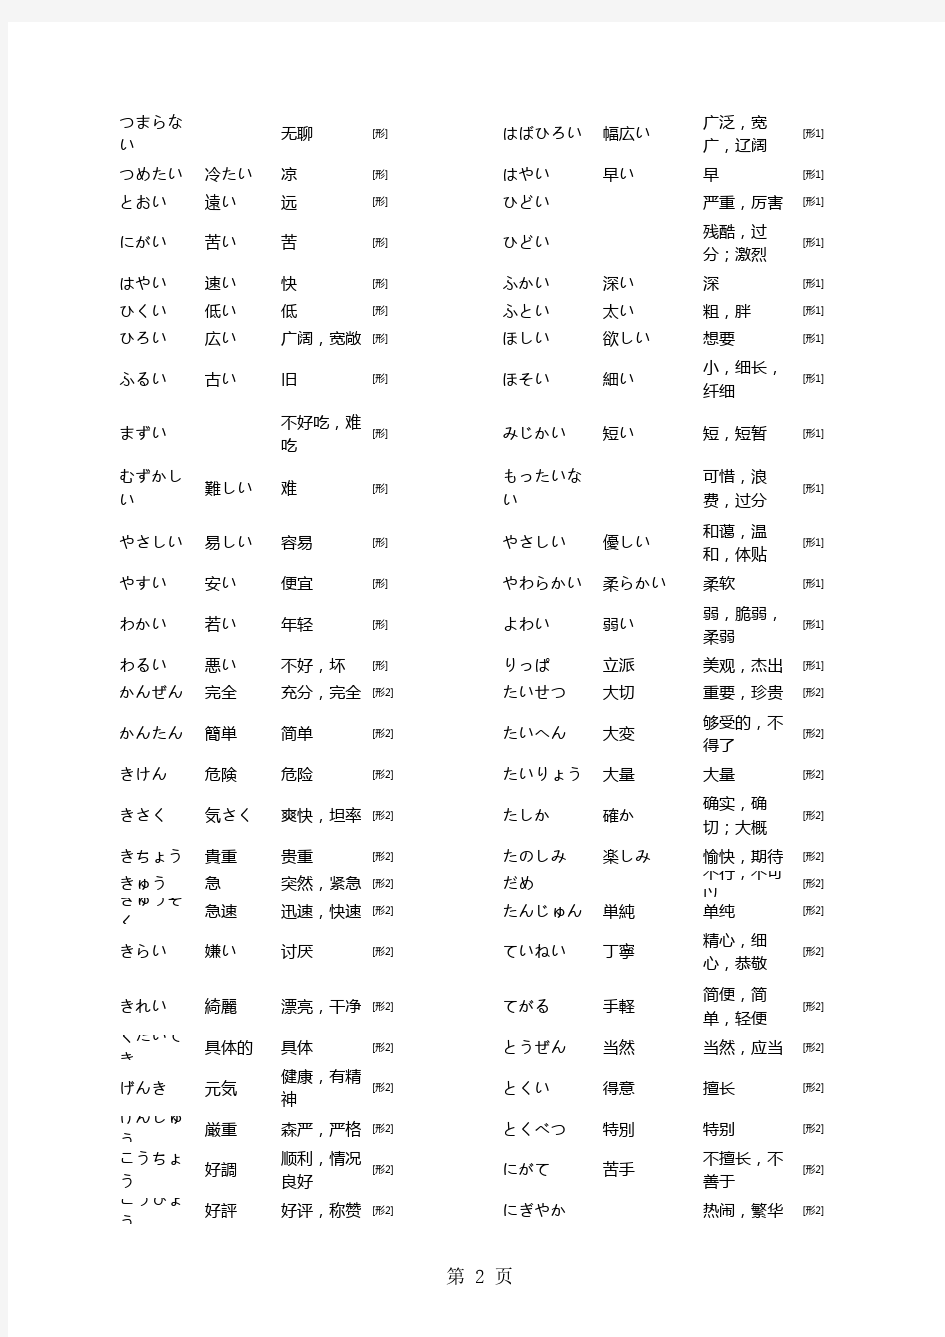 日语常用形容词整理(中日文对照)